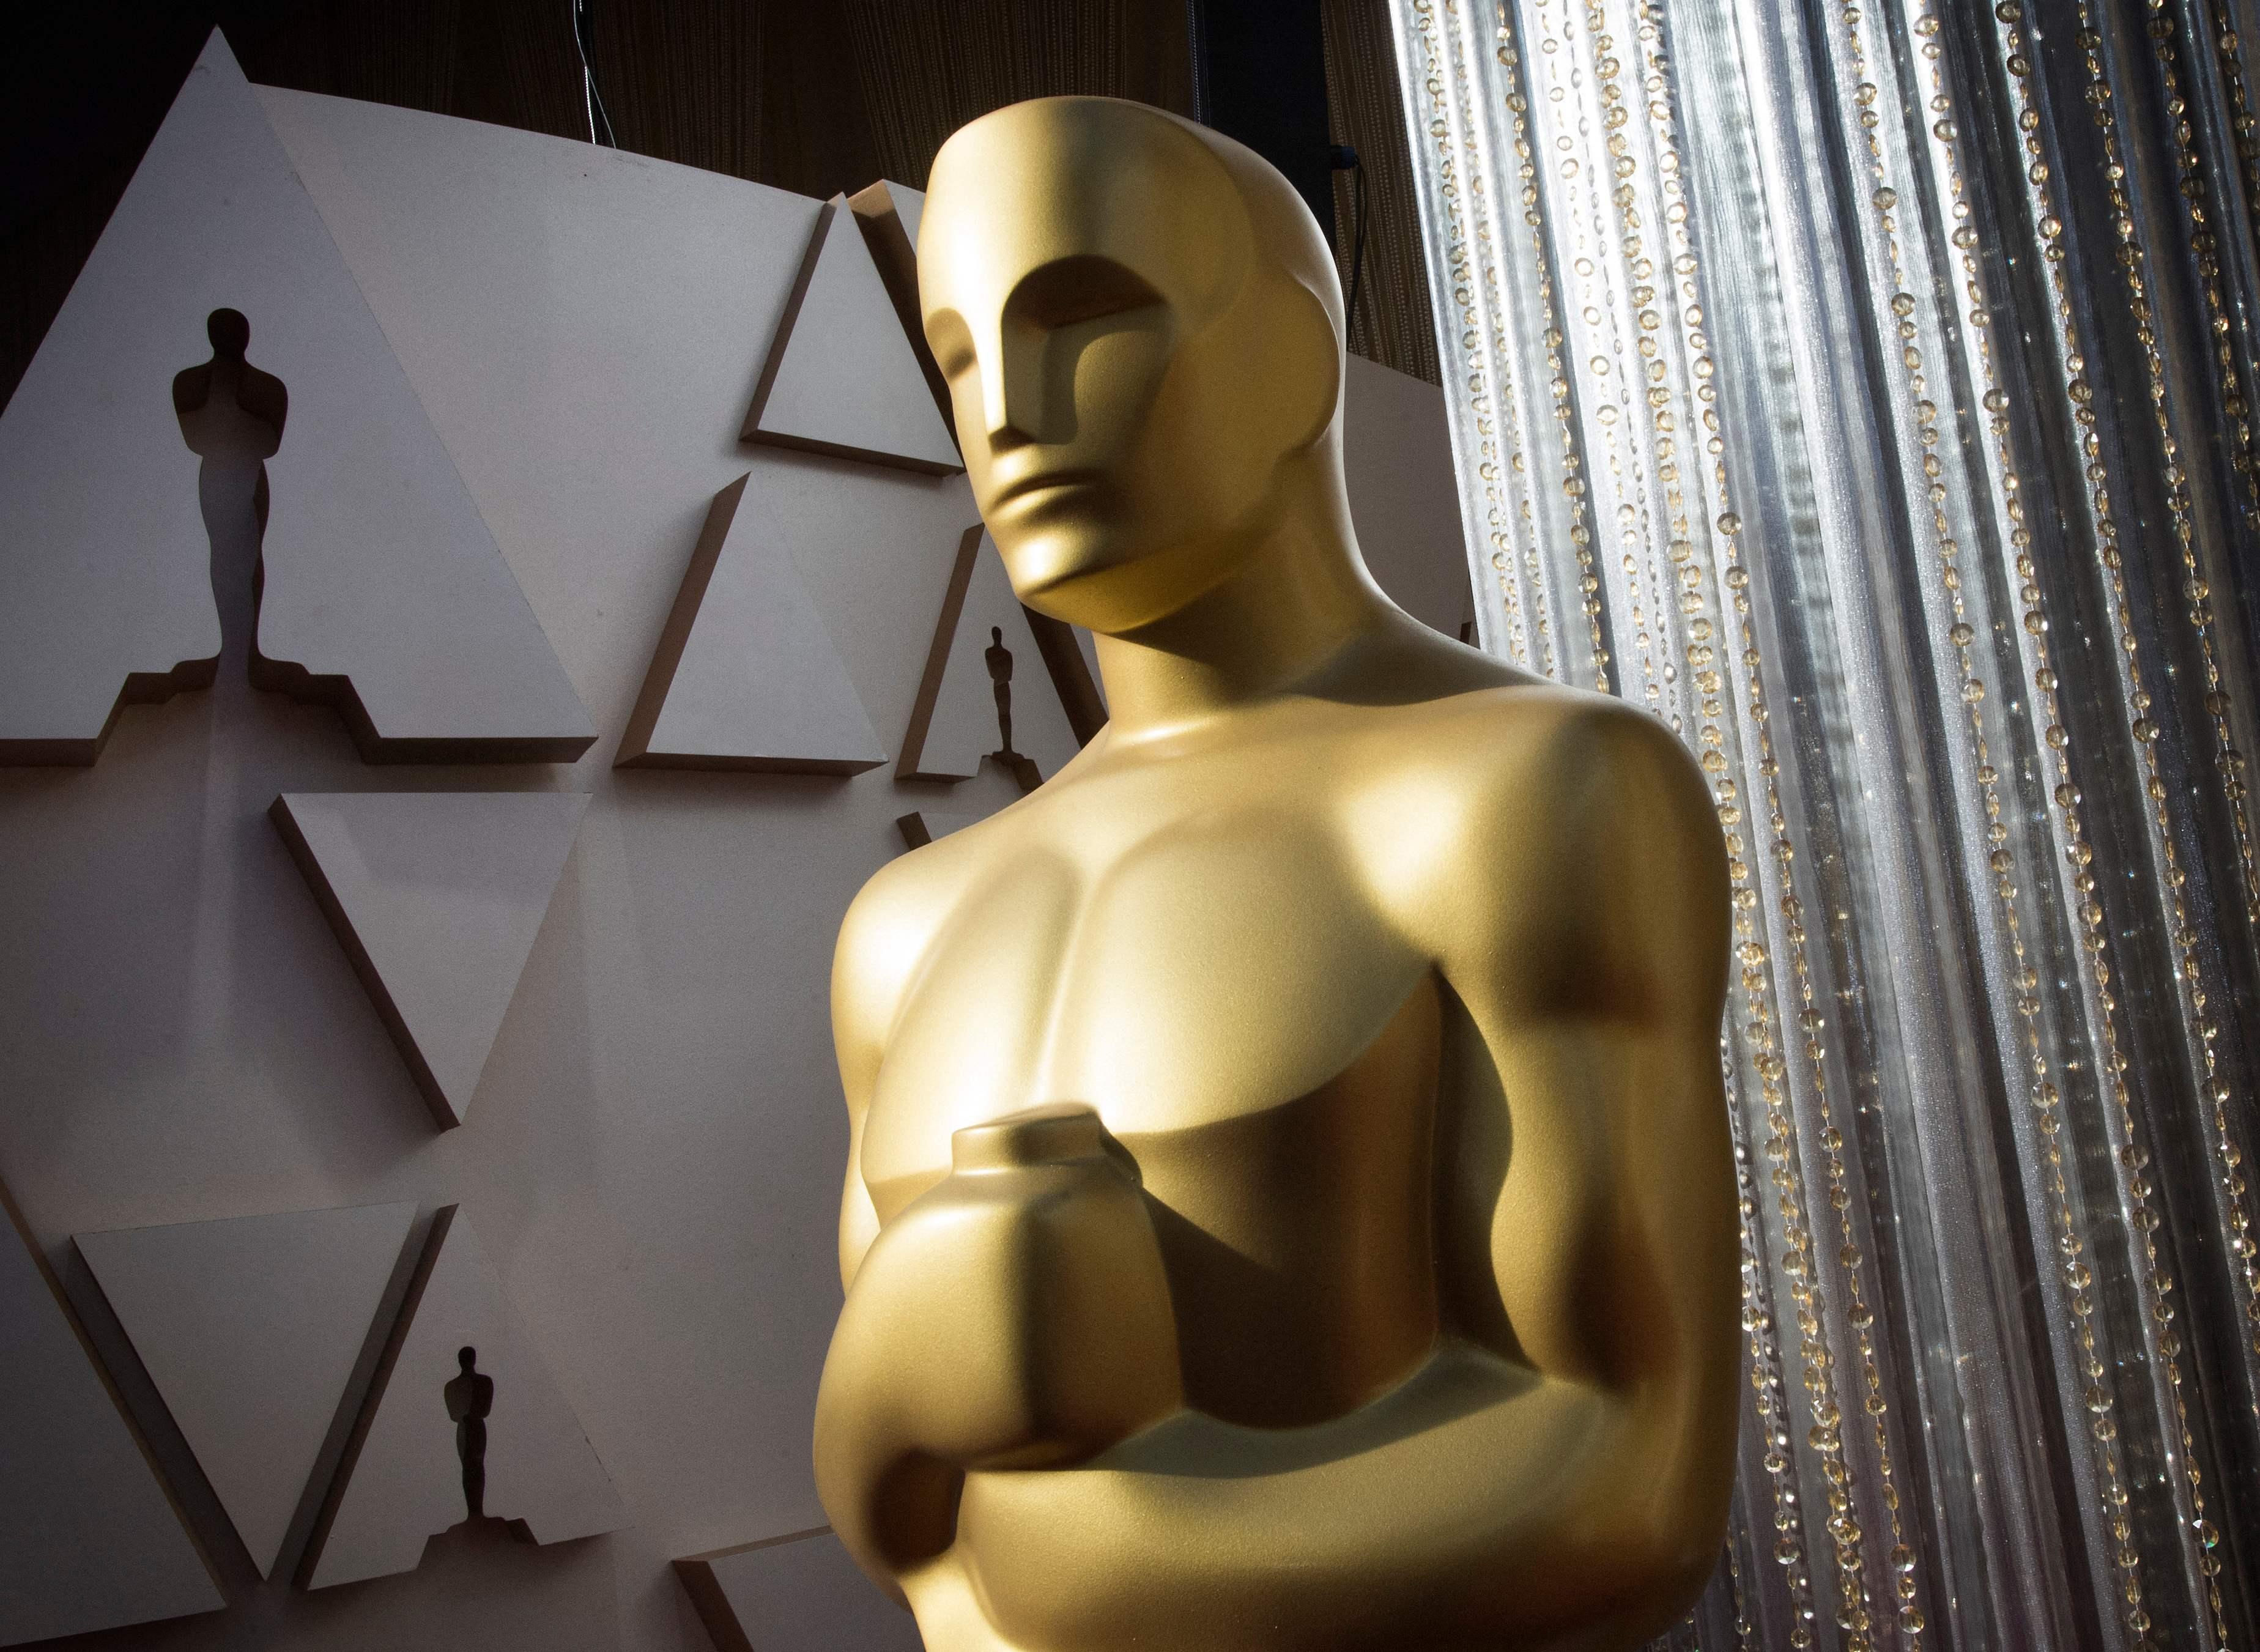 93. Oscars - Mehr als Hälfte der TV-Zuschauer in USA verloren